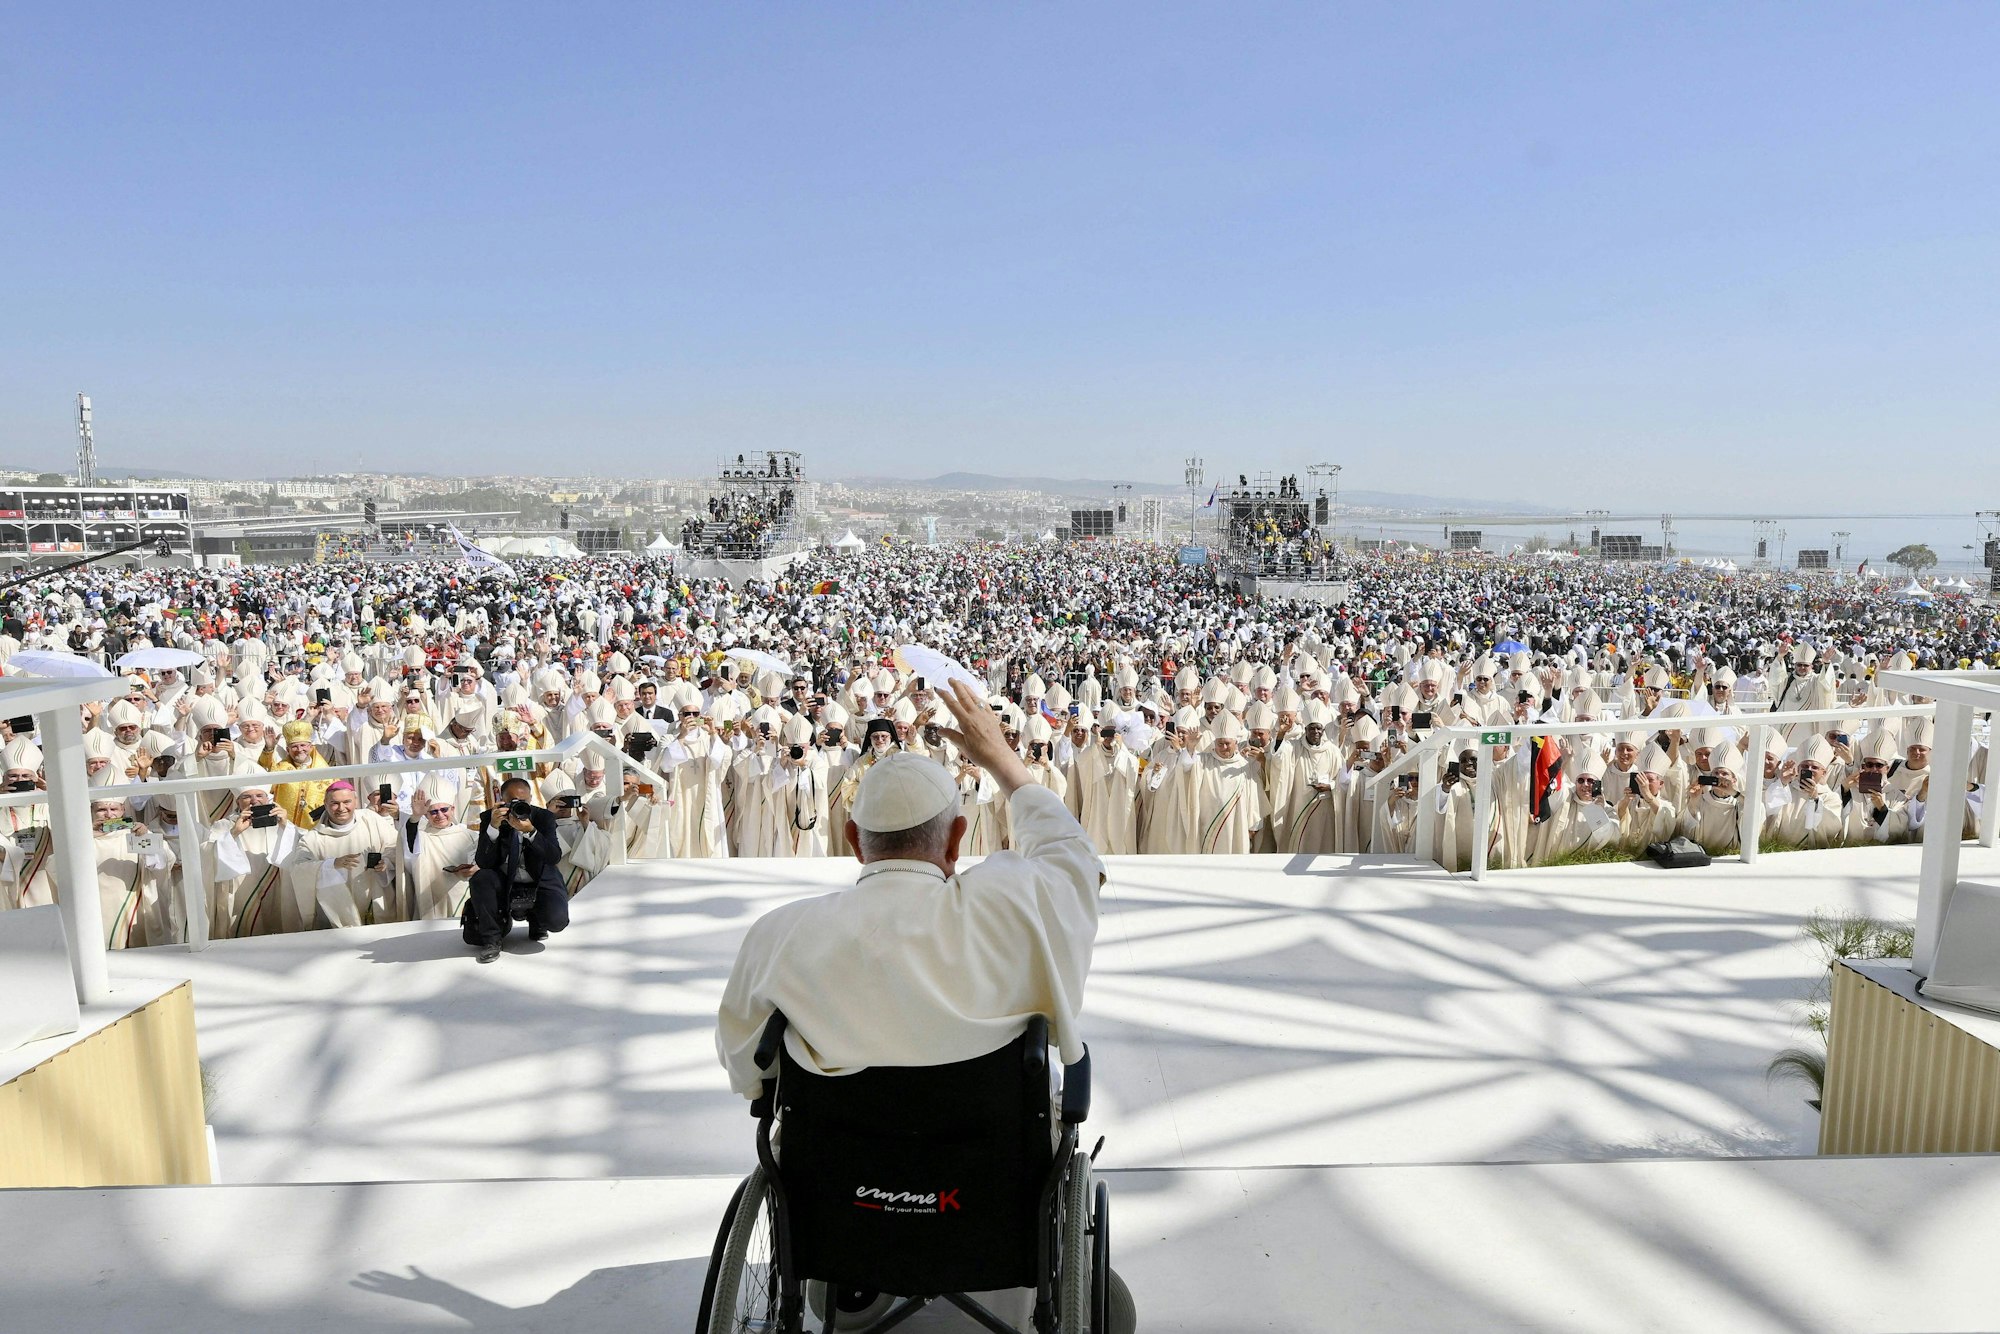 Papst Franziskus sitzt im Rollstuhl auf einer Bühne unter freiem Himmel. Das Bild zeigt ihn von hinten. Im Hintergrund sieht man die Priester und Gäubigen vor der Bühne stehen.